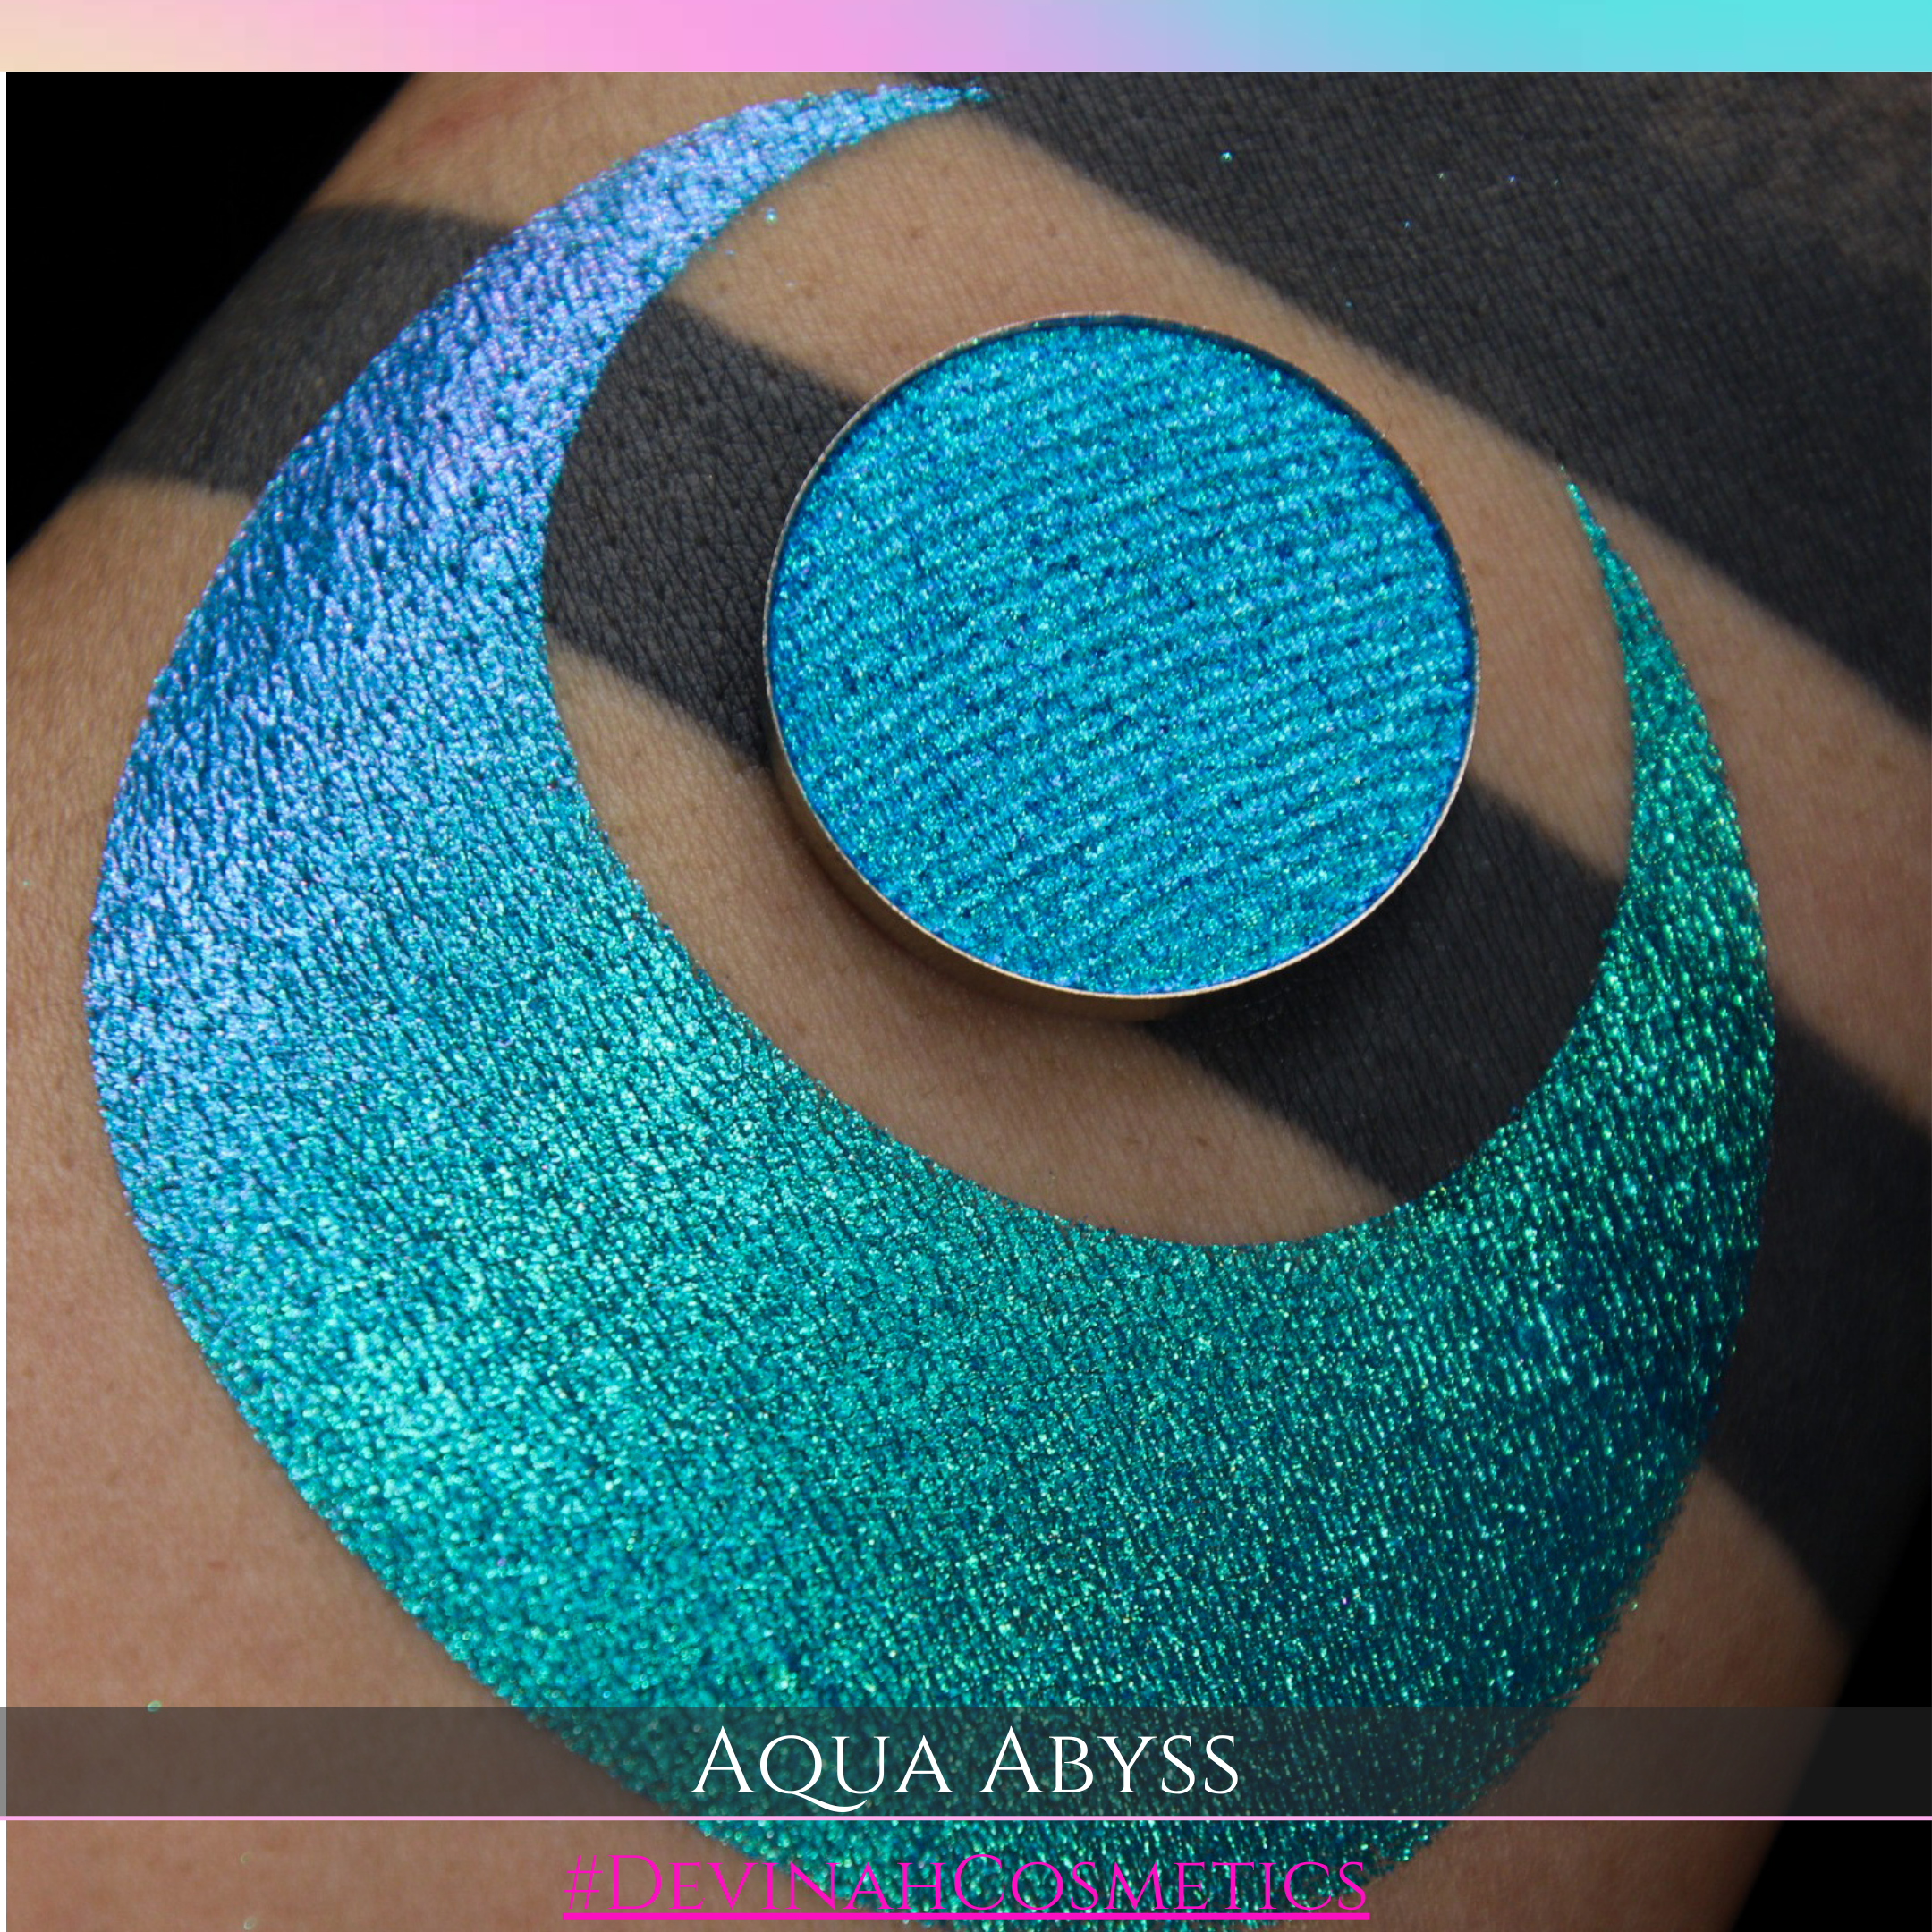 AQUA ABYSS Pressed Pigment